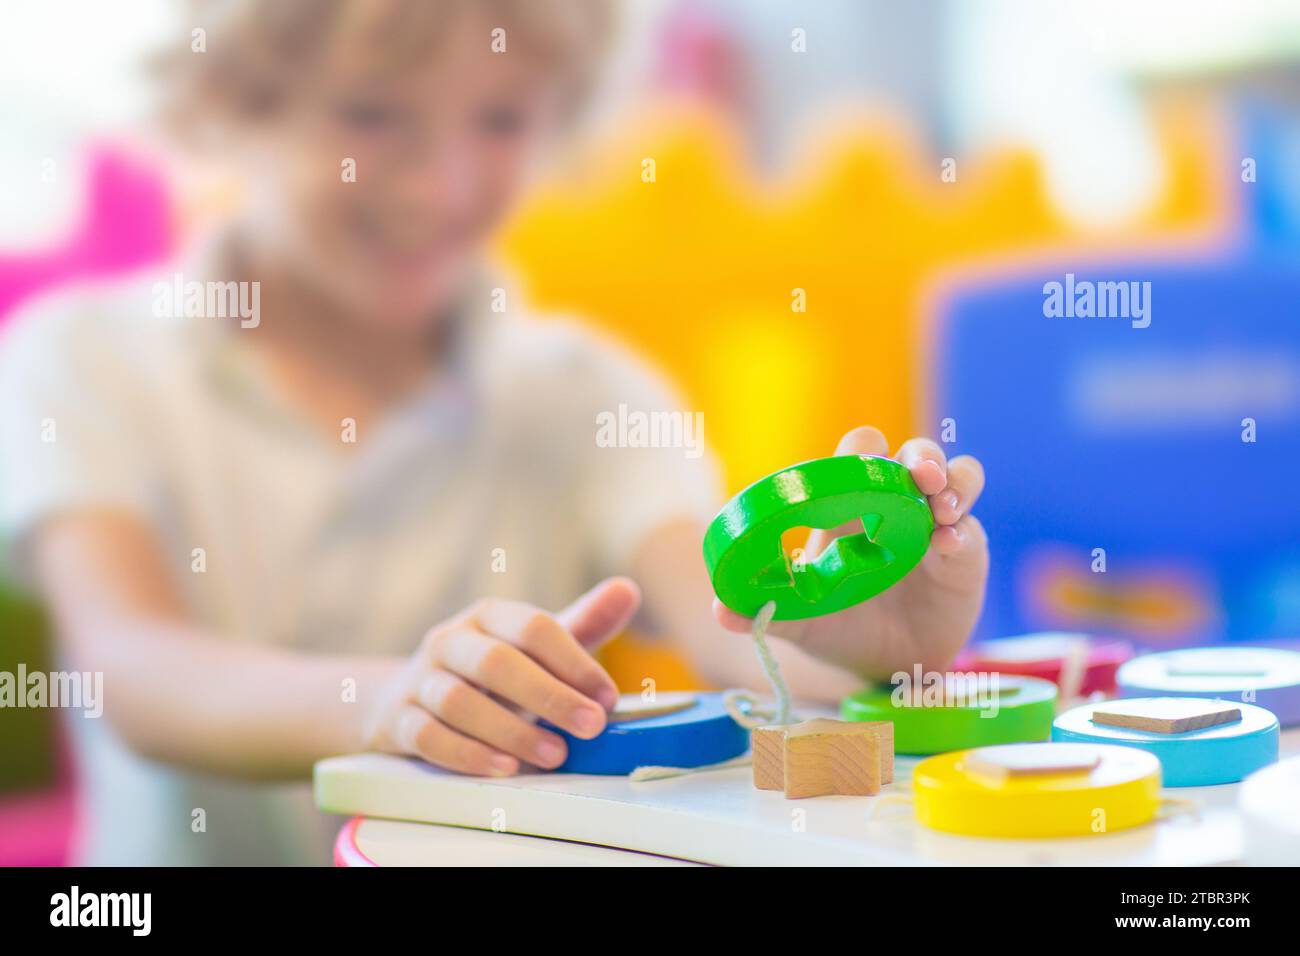 Petit garçon à la maternelle ou à la garderie. Enfant jouant avec des jouets éducatifs colorés dans la maternelle. Les enfants jouent dans l'aire de jeux intérieure. Éducation préscolaire Banque D'Images